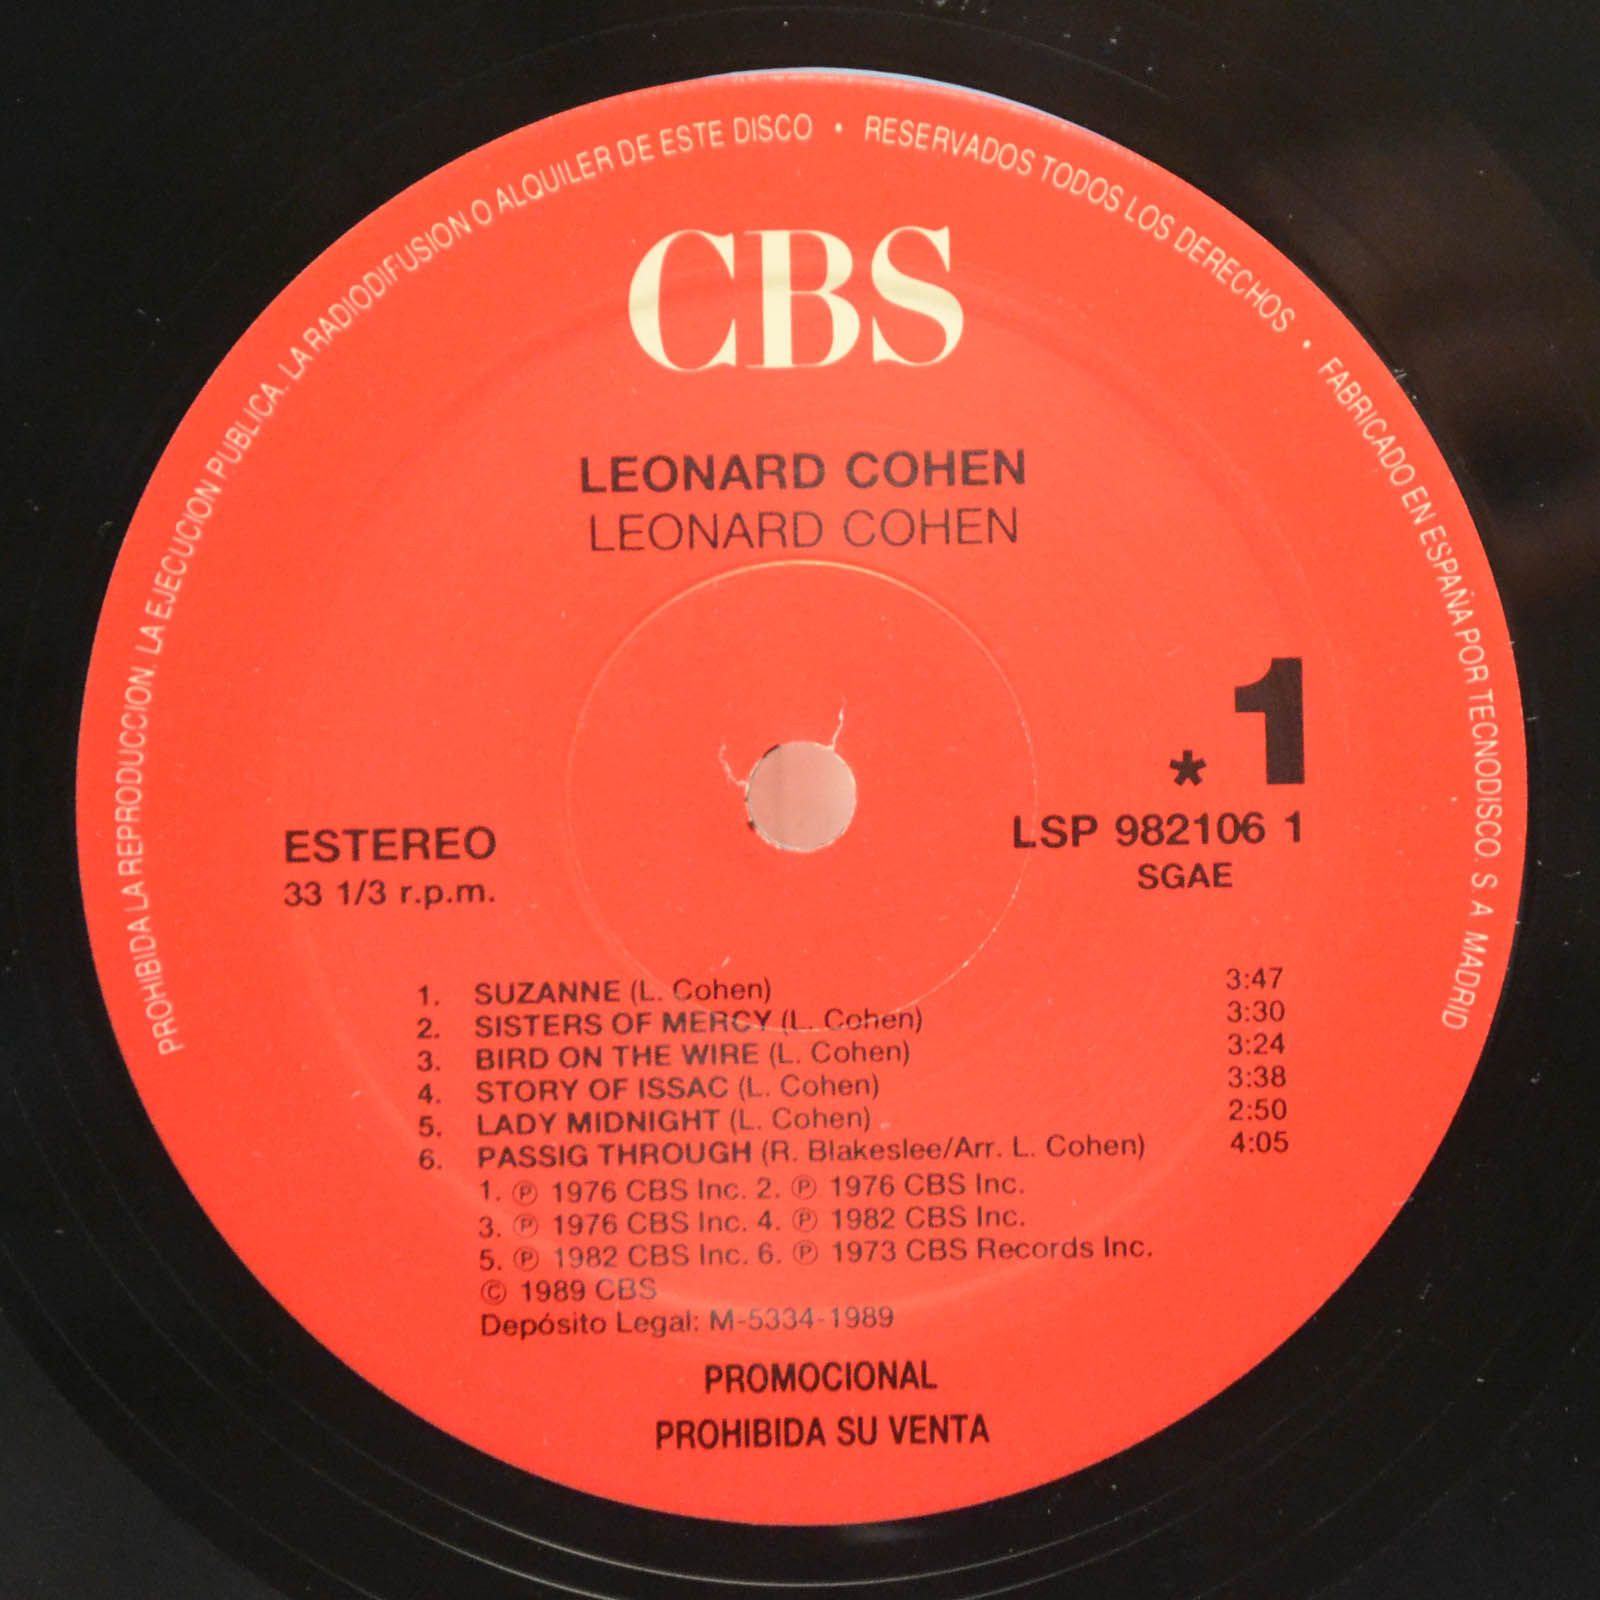 Leonard Cohen — Leonard Cohen, 1989